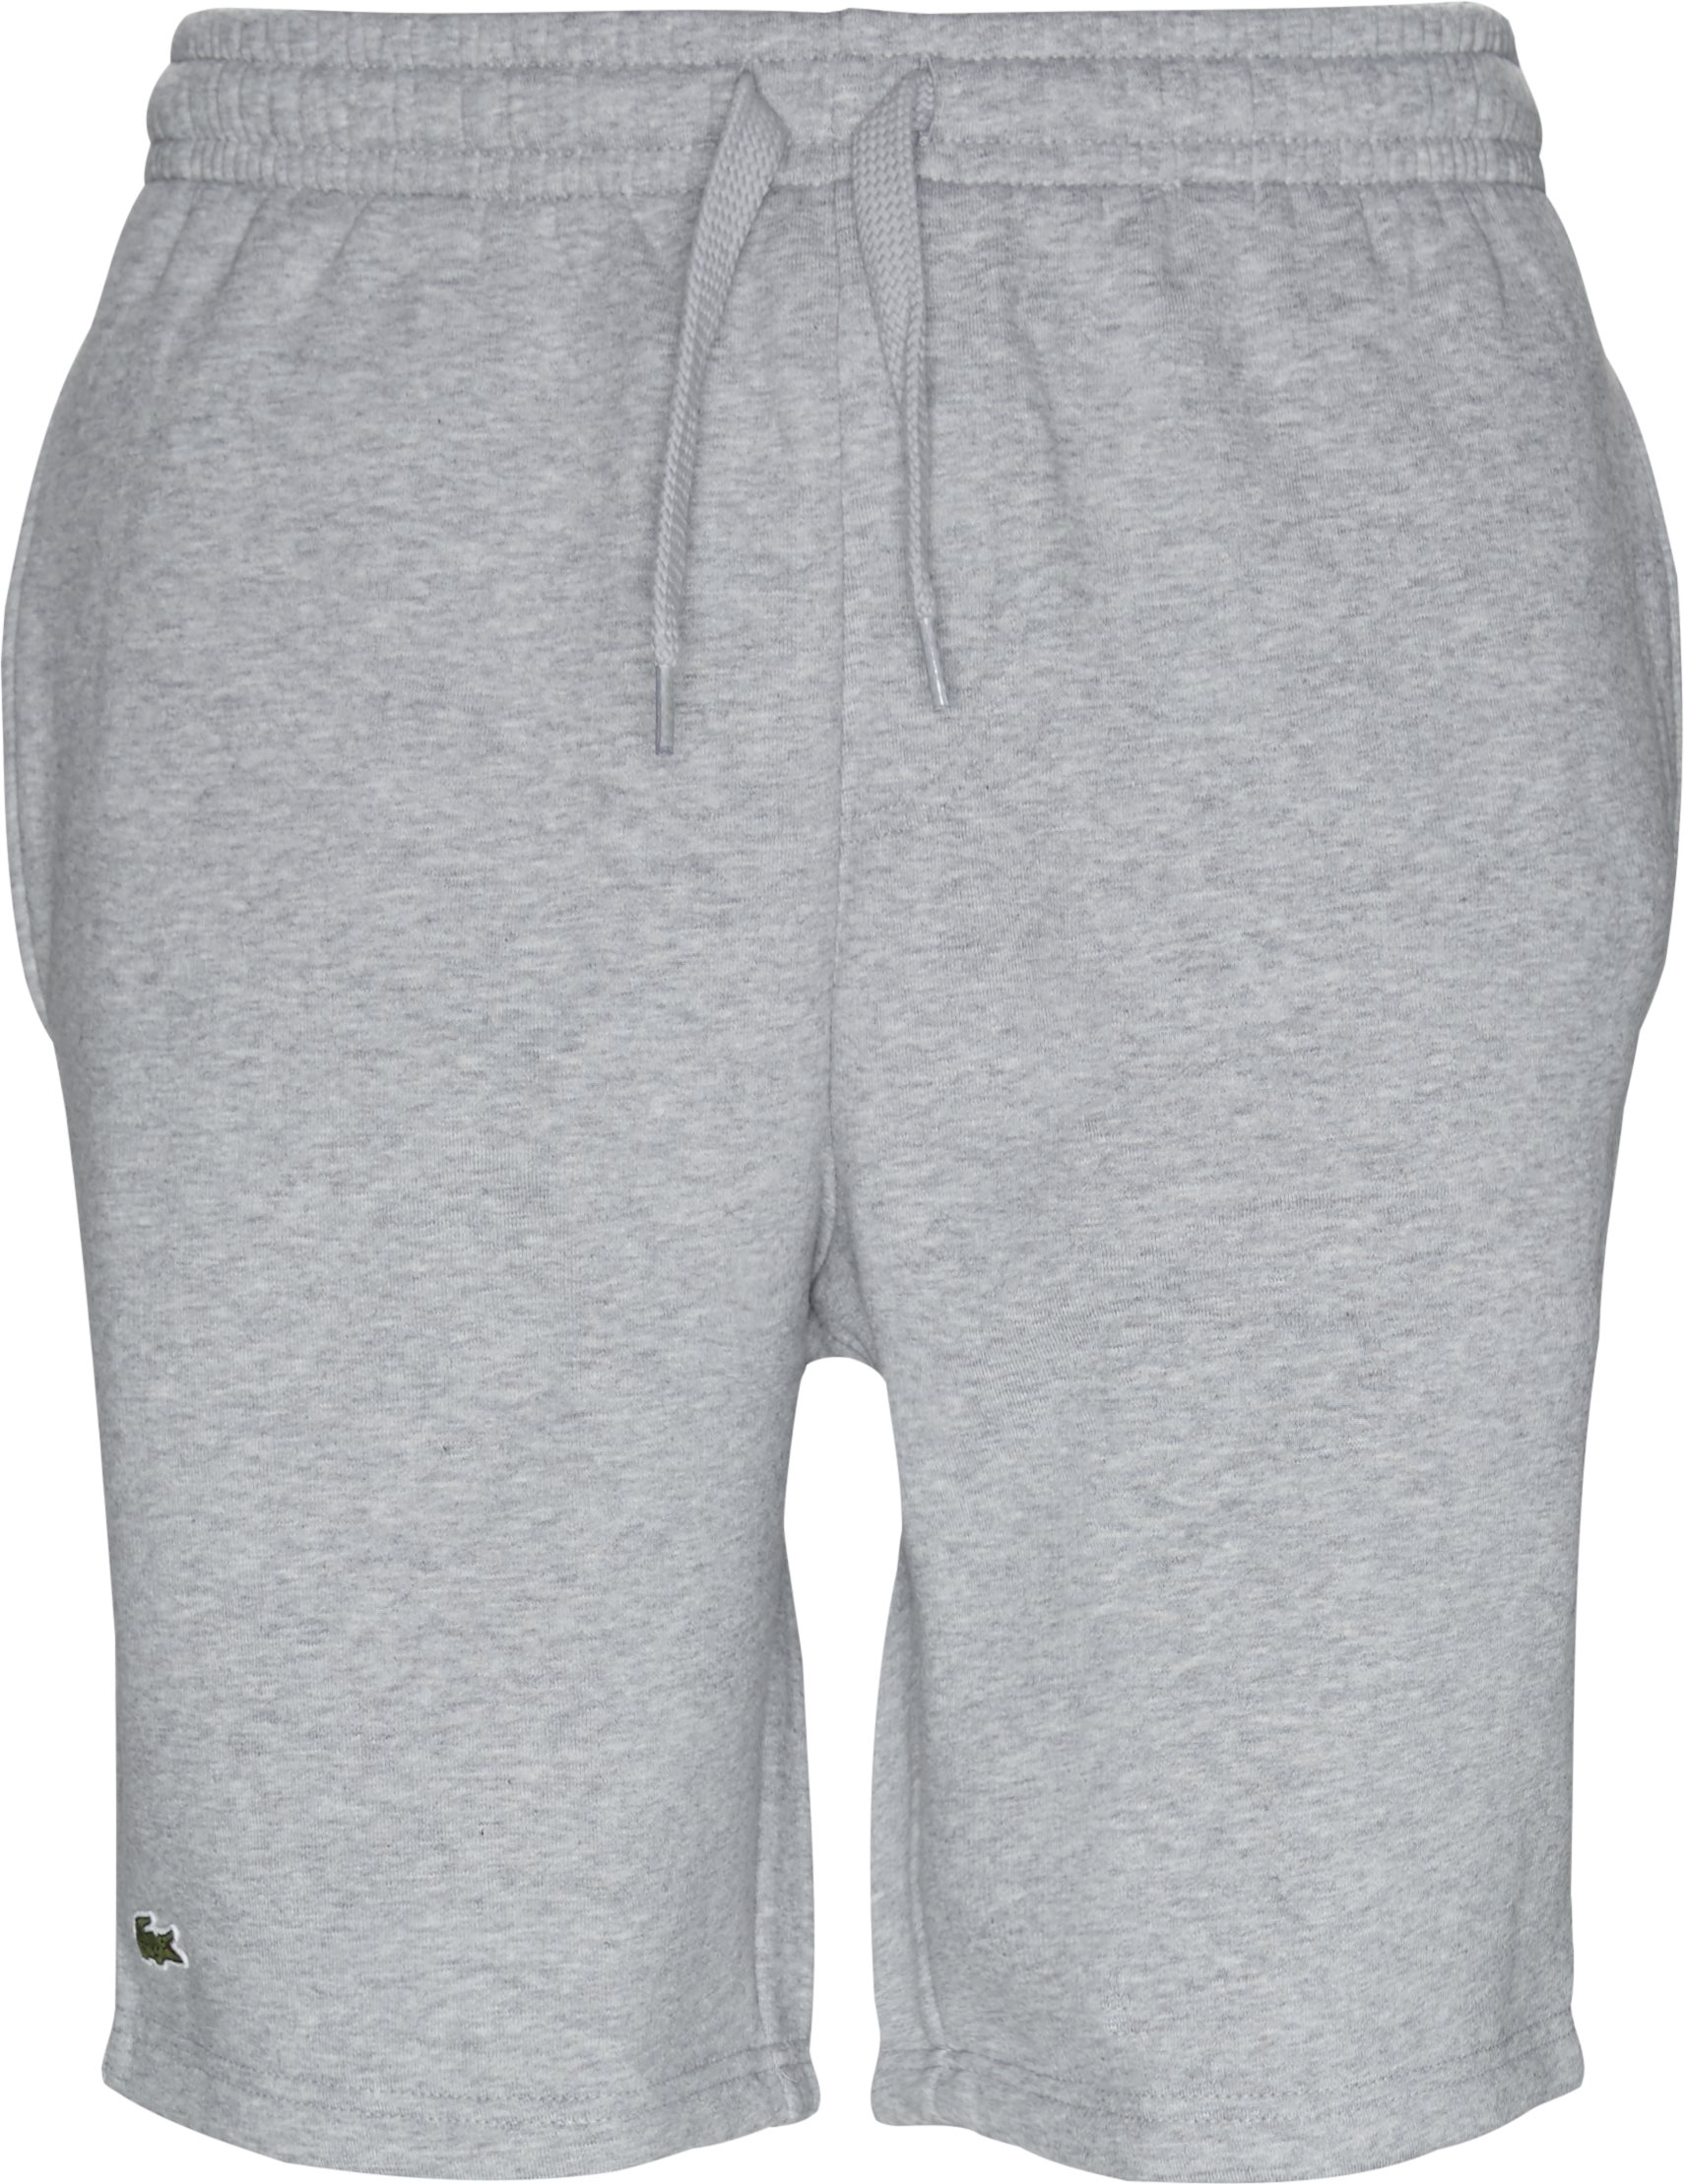 Tennis Fleece Shorts - Shorts - Regular fit - Grå